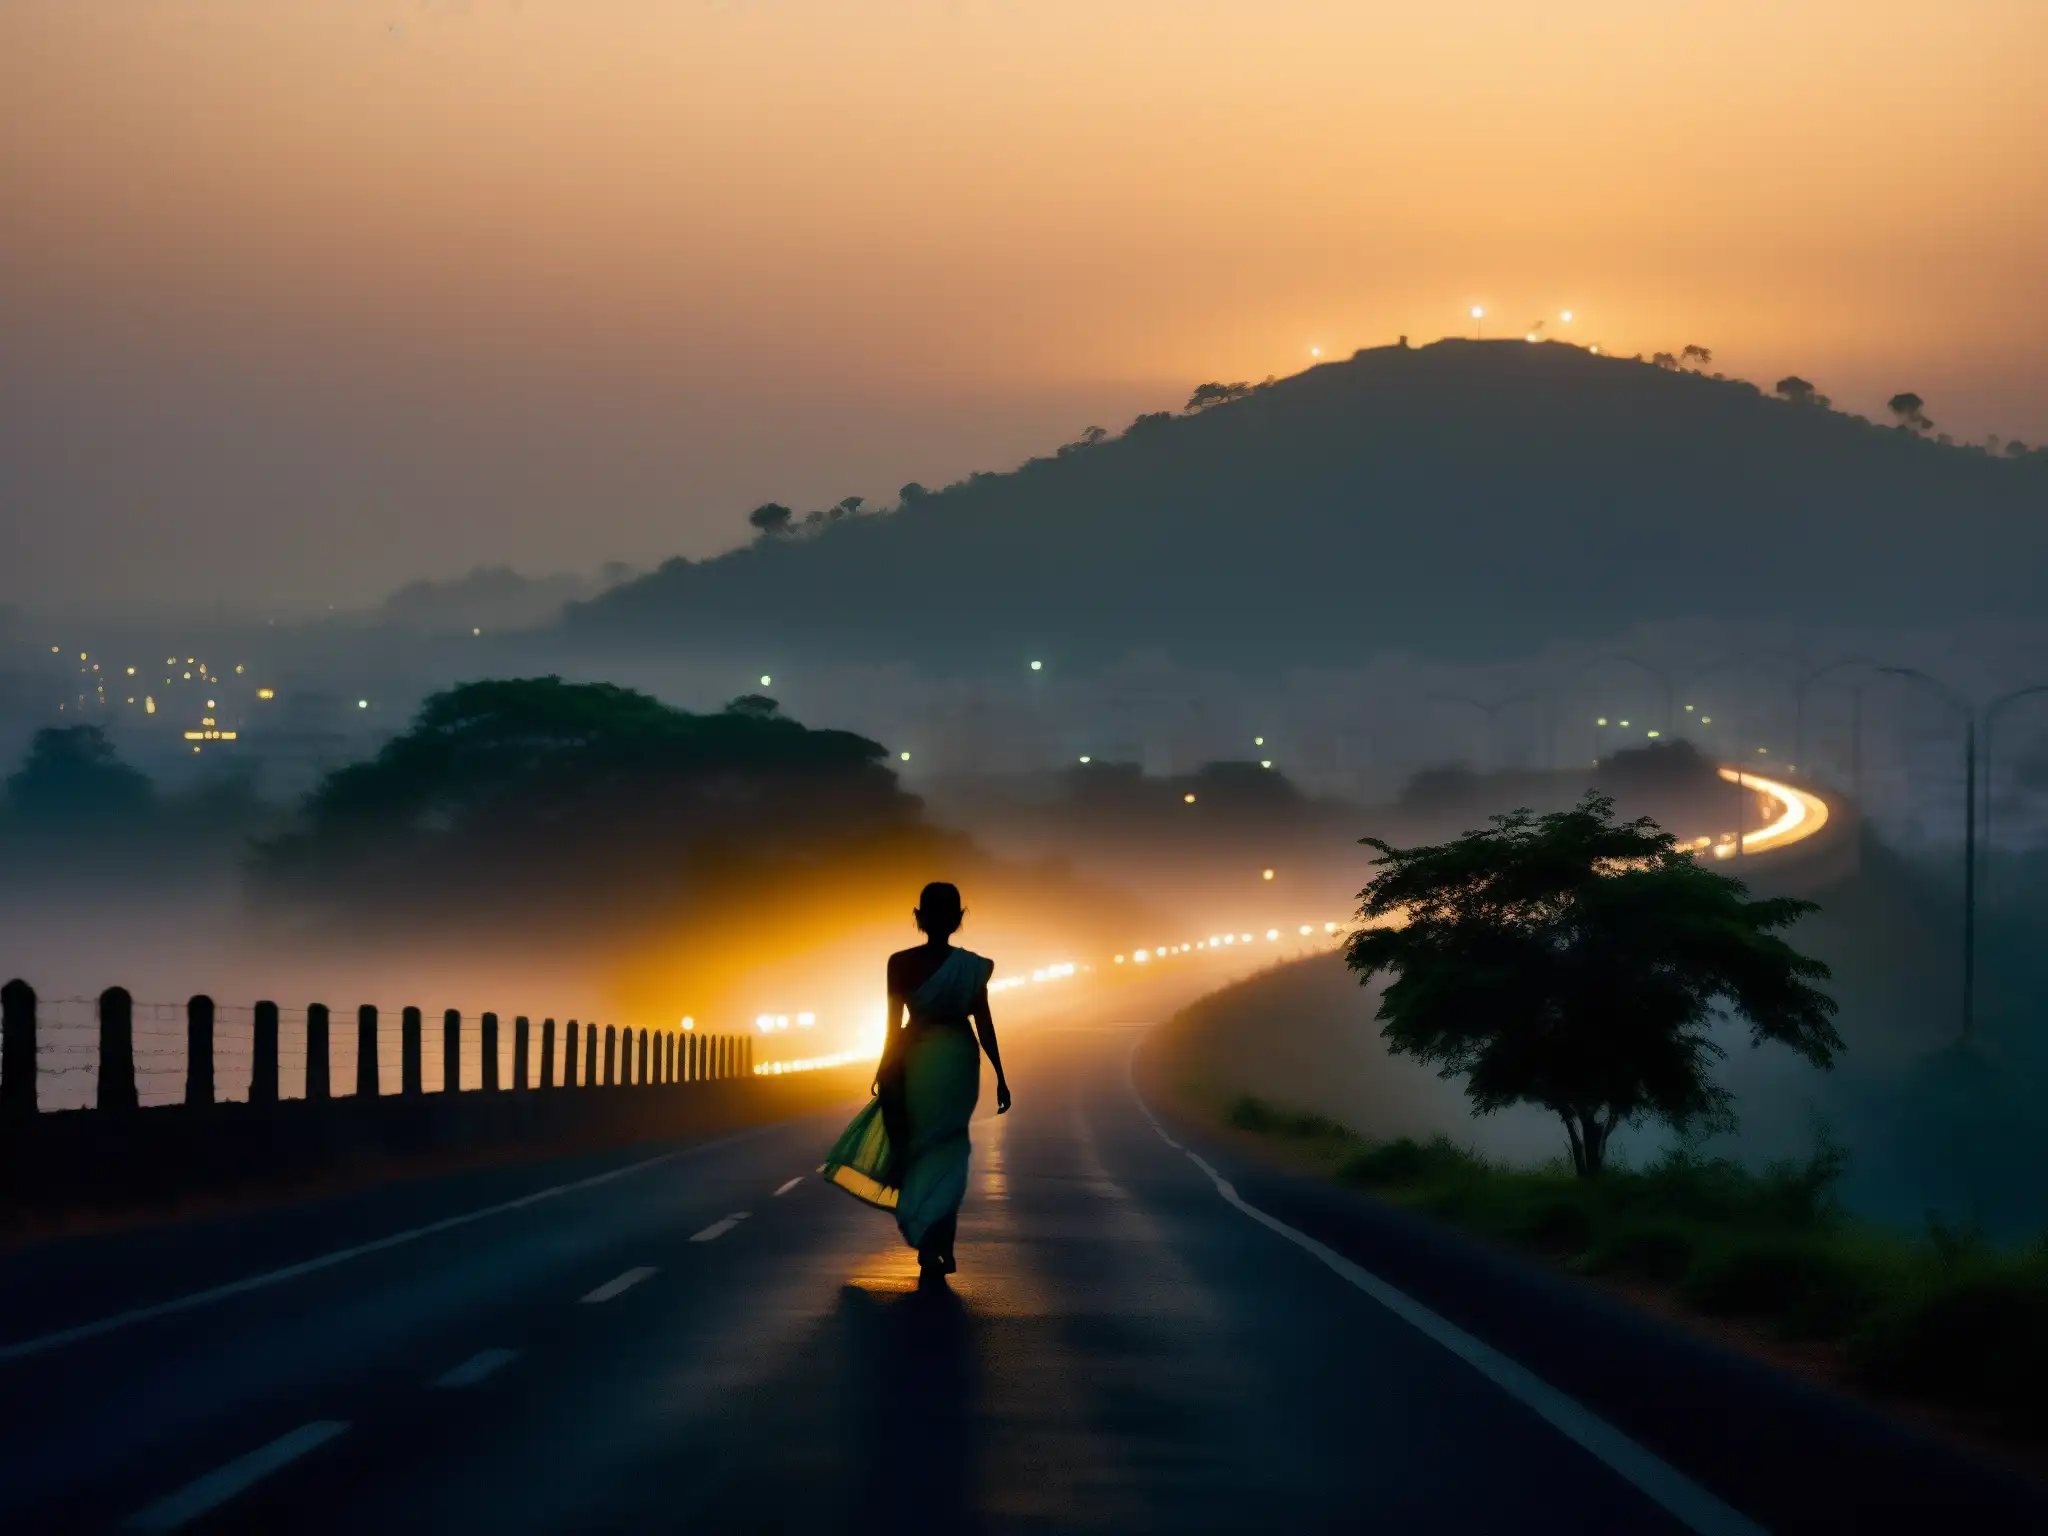 Una misteriosa escena en la carretera de Bombay al atardecer, con la silueta de una mujer en sari y luces de la ciudad, evocando un mito urbano